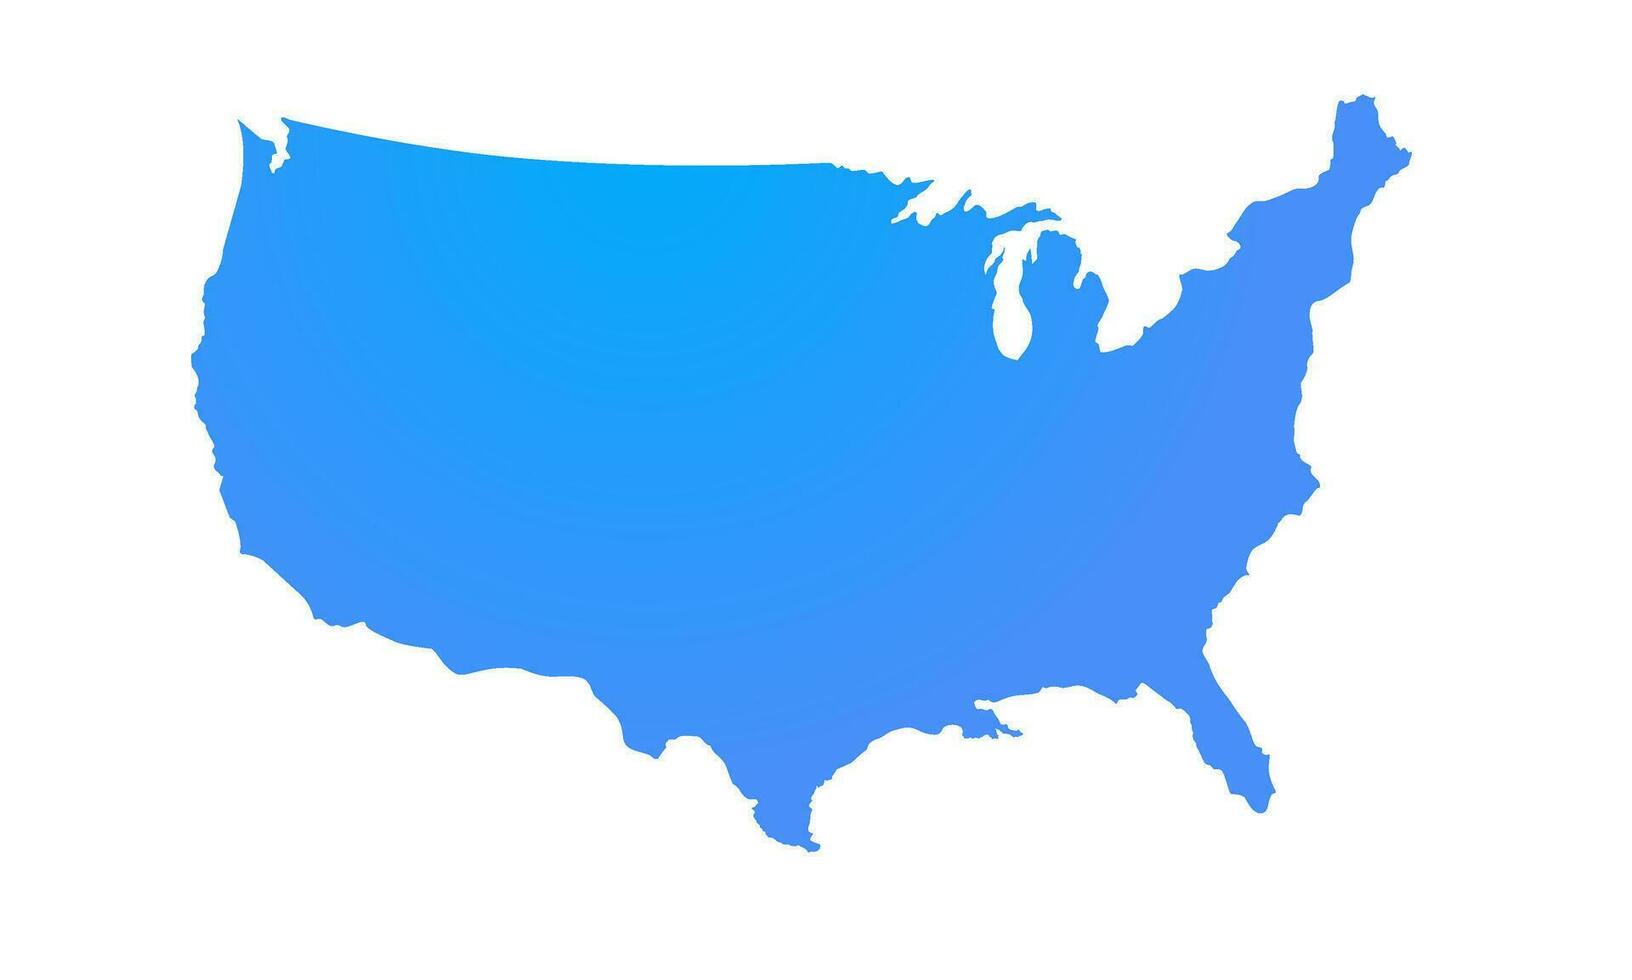 Unidos estados Estado região mapa em branco plano de fundo, plano silhueta EUA mapa com gradiente azul misturado cores. vetor